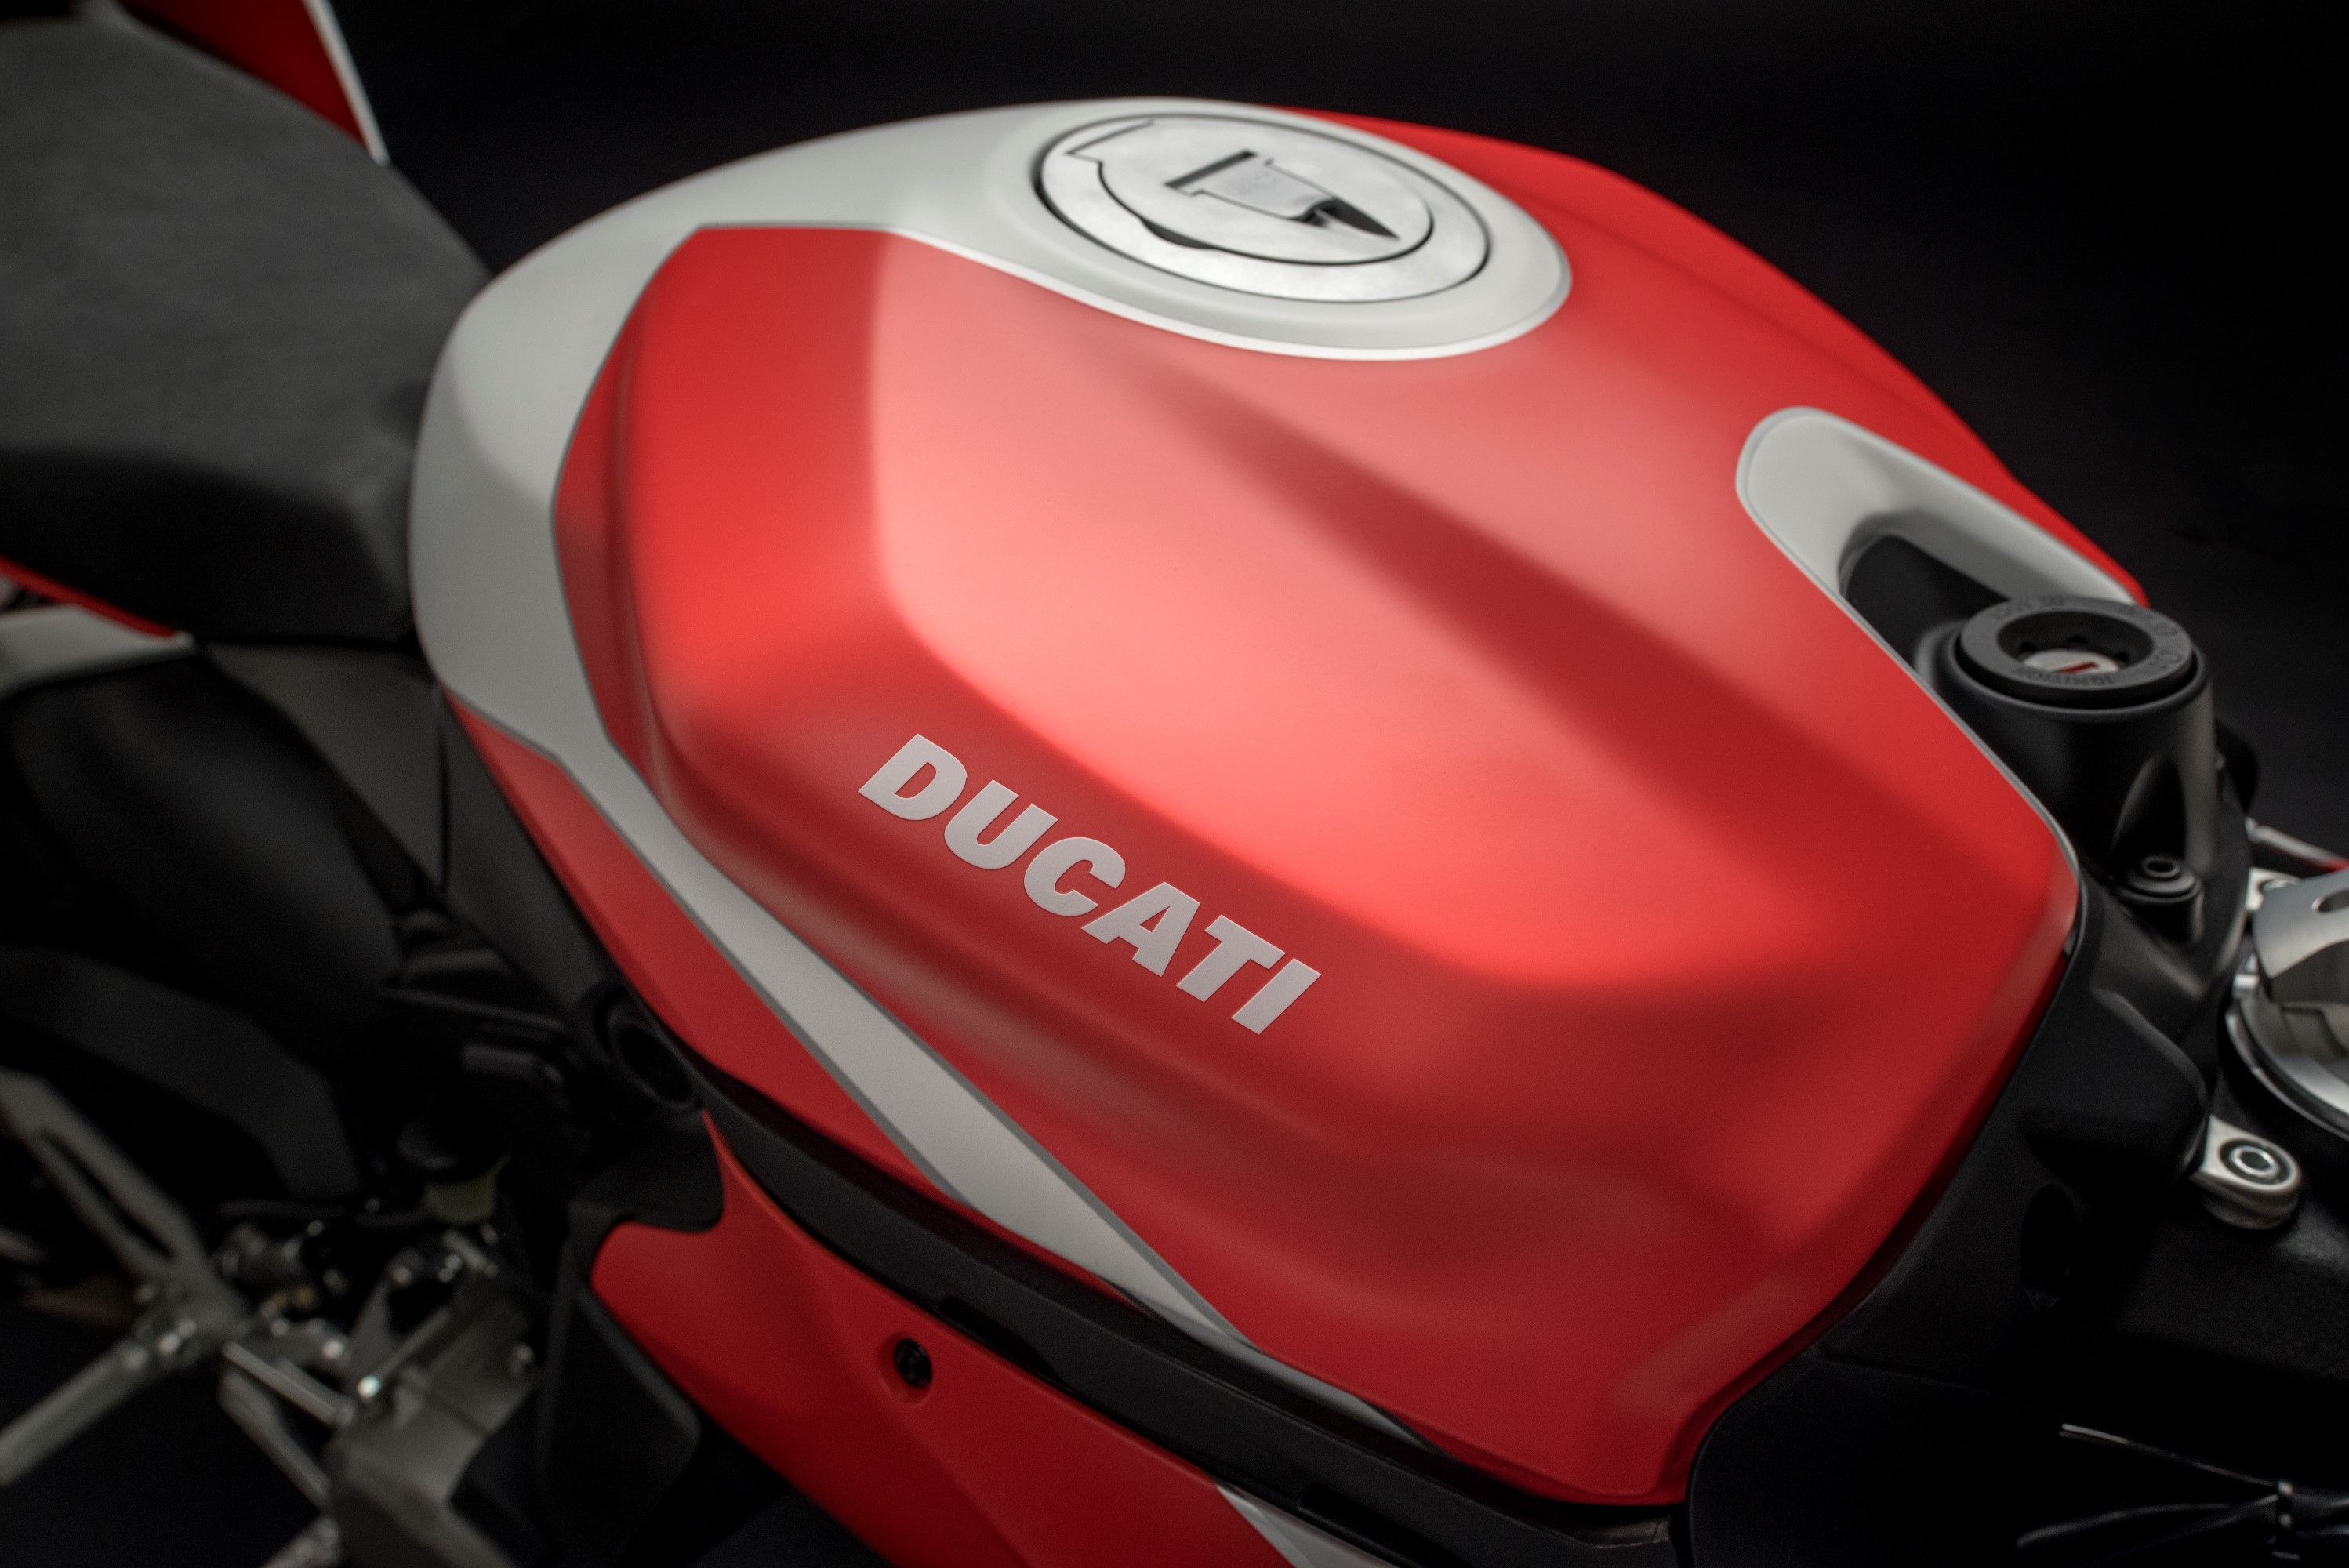 2018 Ducati Panigale 959 Corse